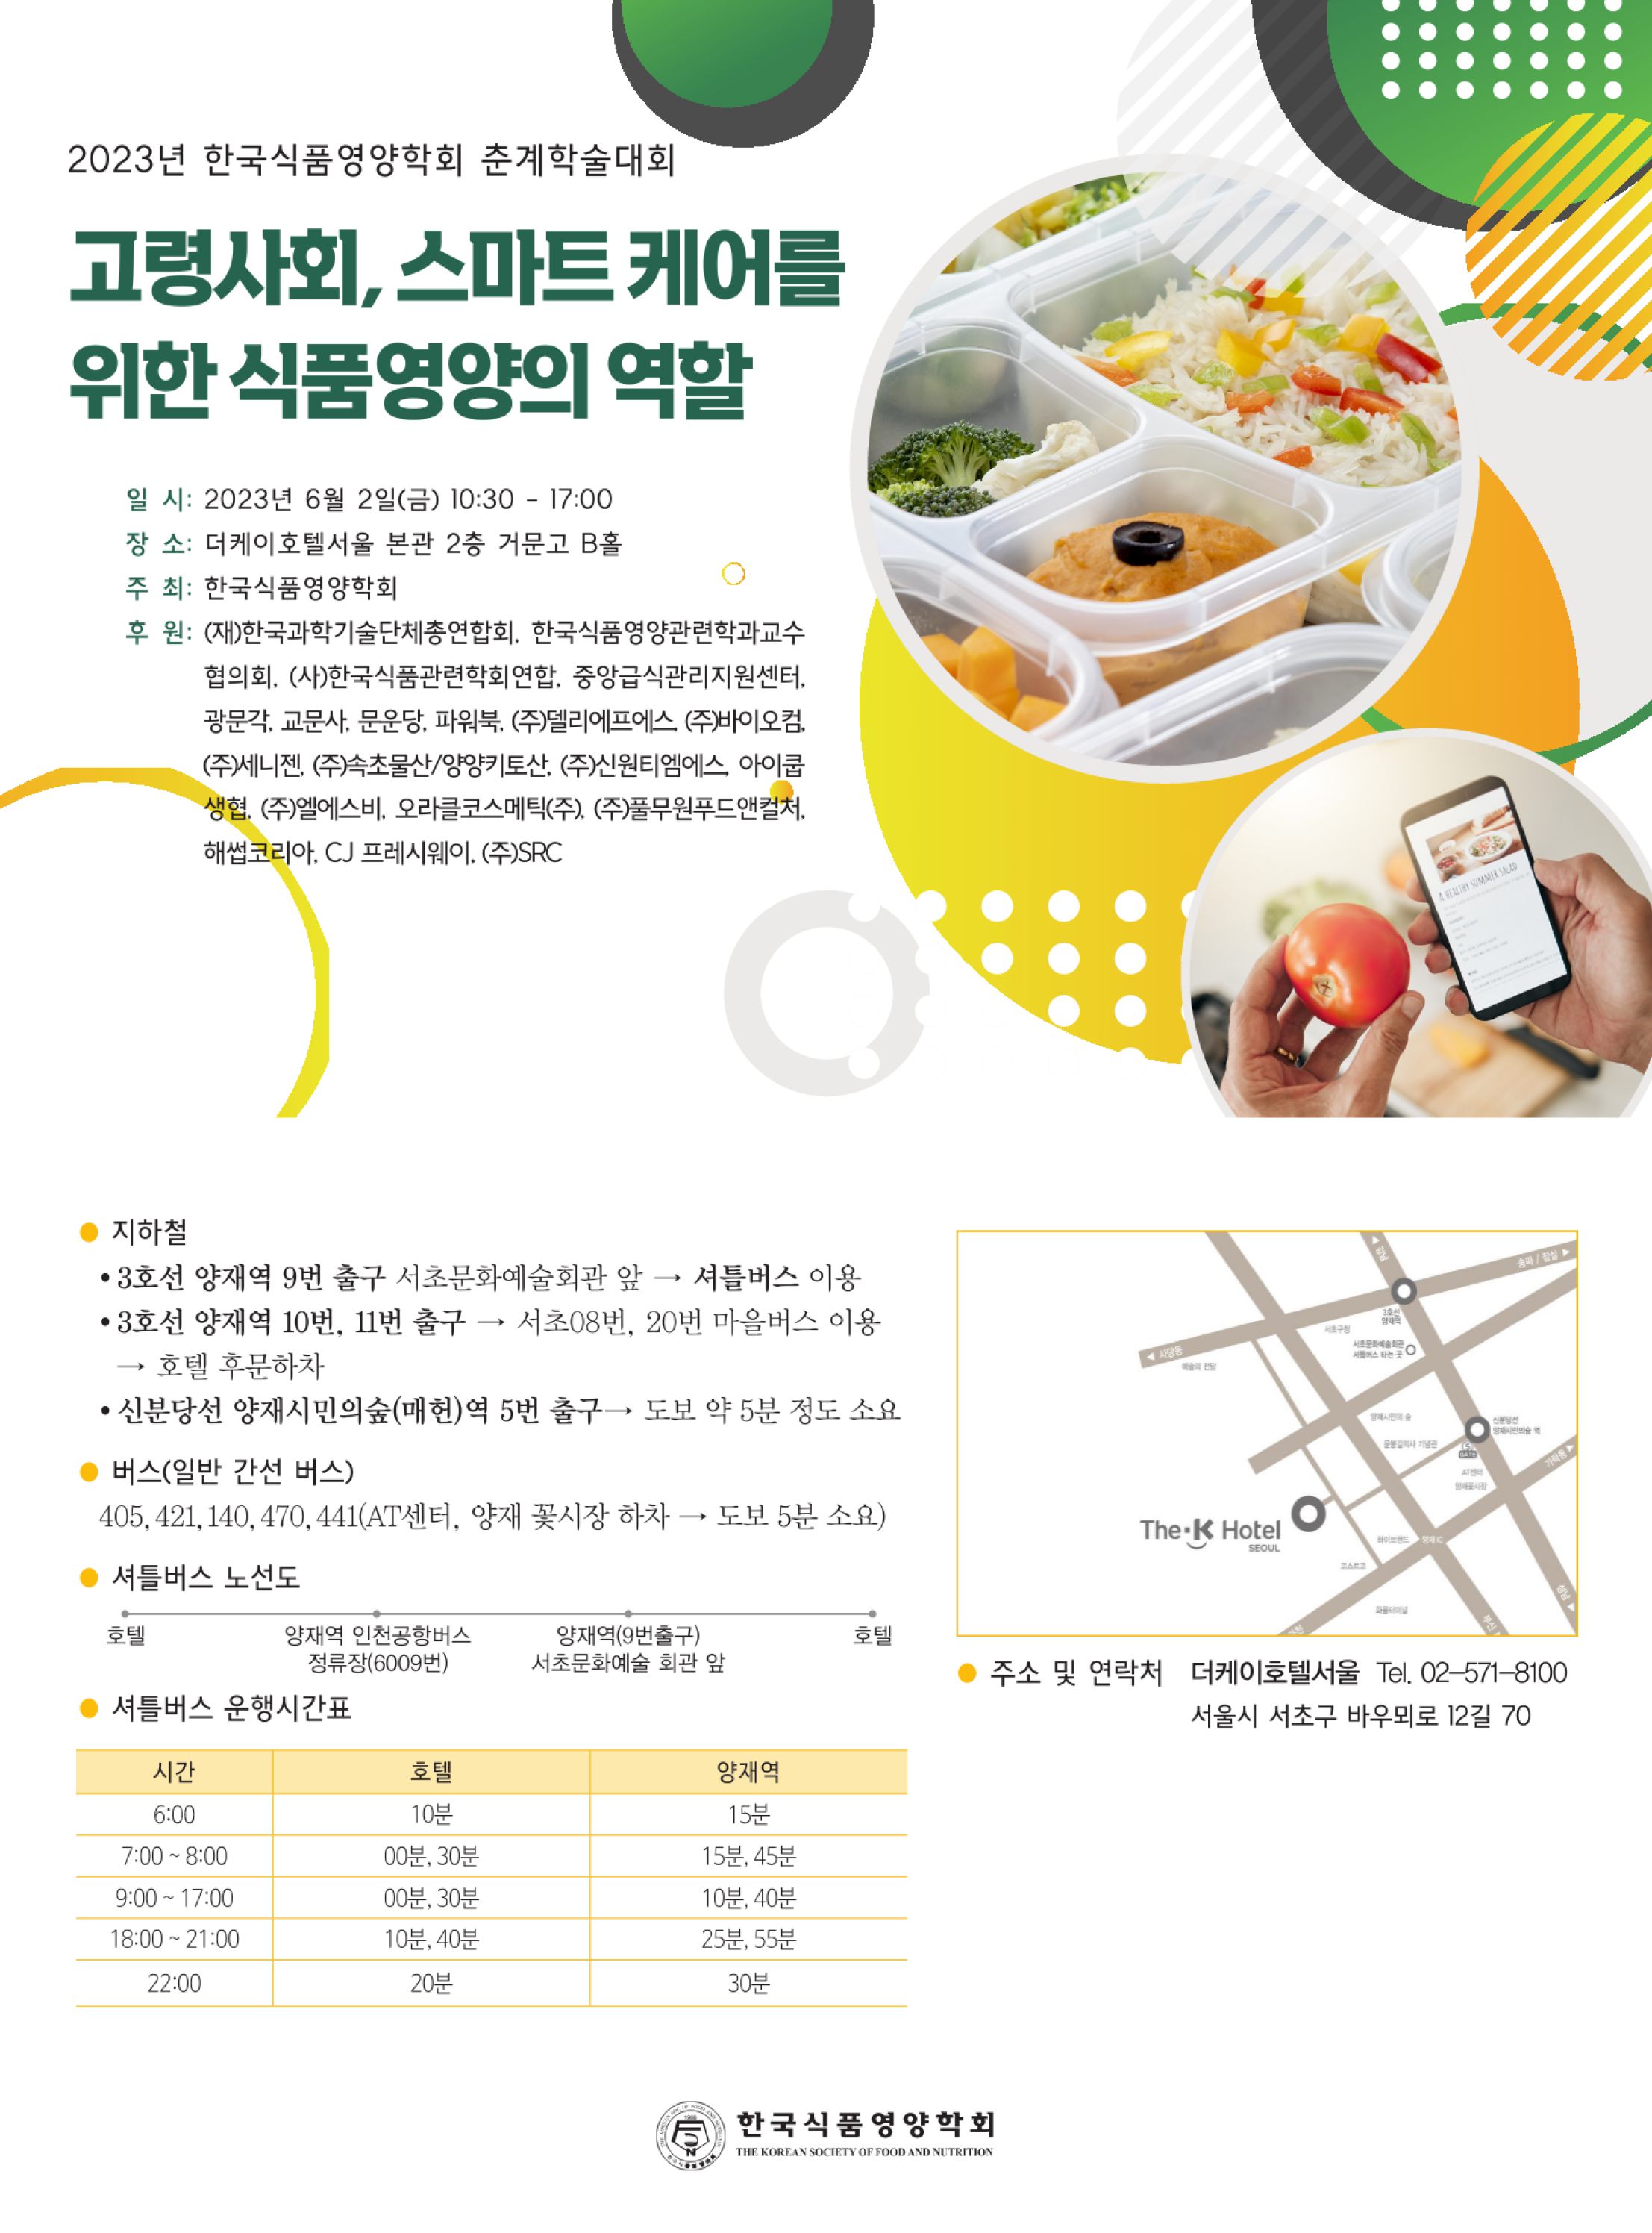 1.한국식품영양학회 초청장 2023 춘계 - 자세한 내용은 첨부파일에서 확인